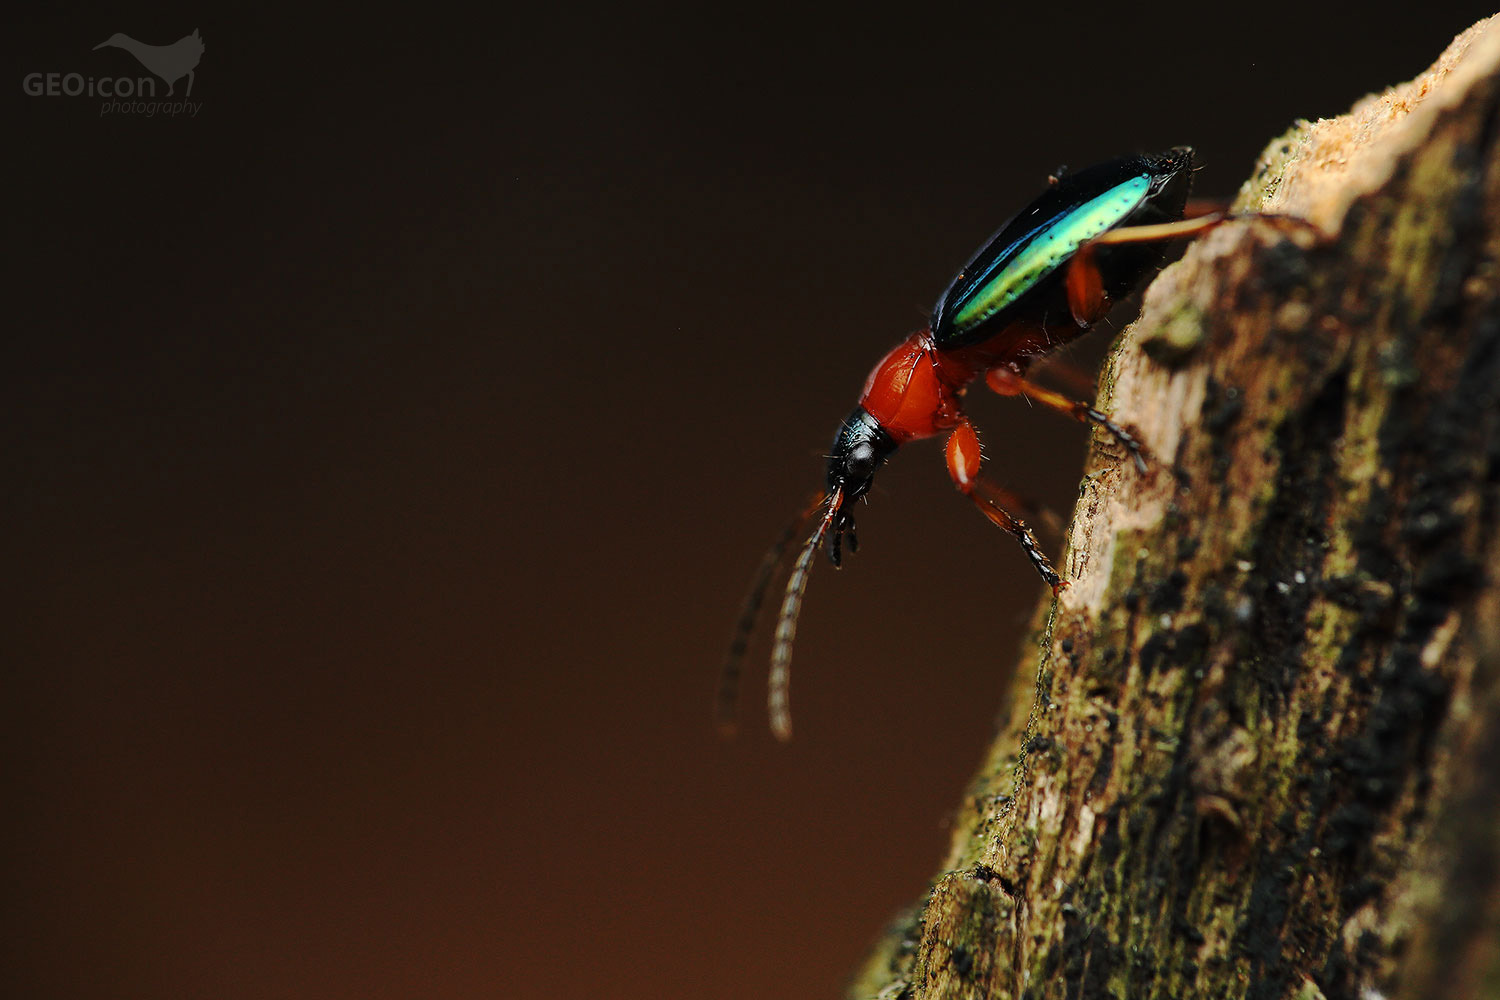 Ground beetle spp. / střevlíček spp. (Lebia chlorocephala)